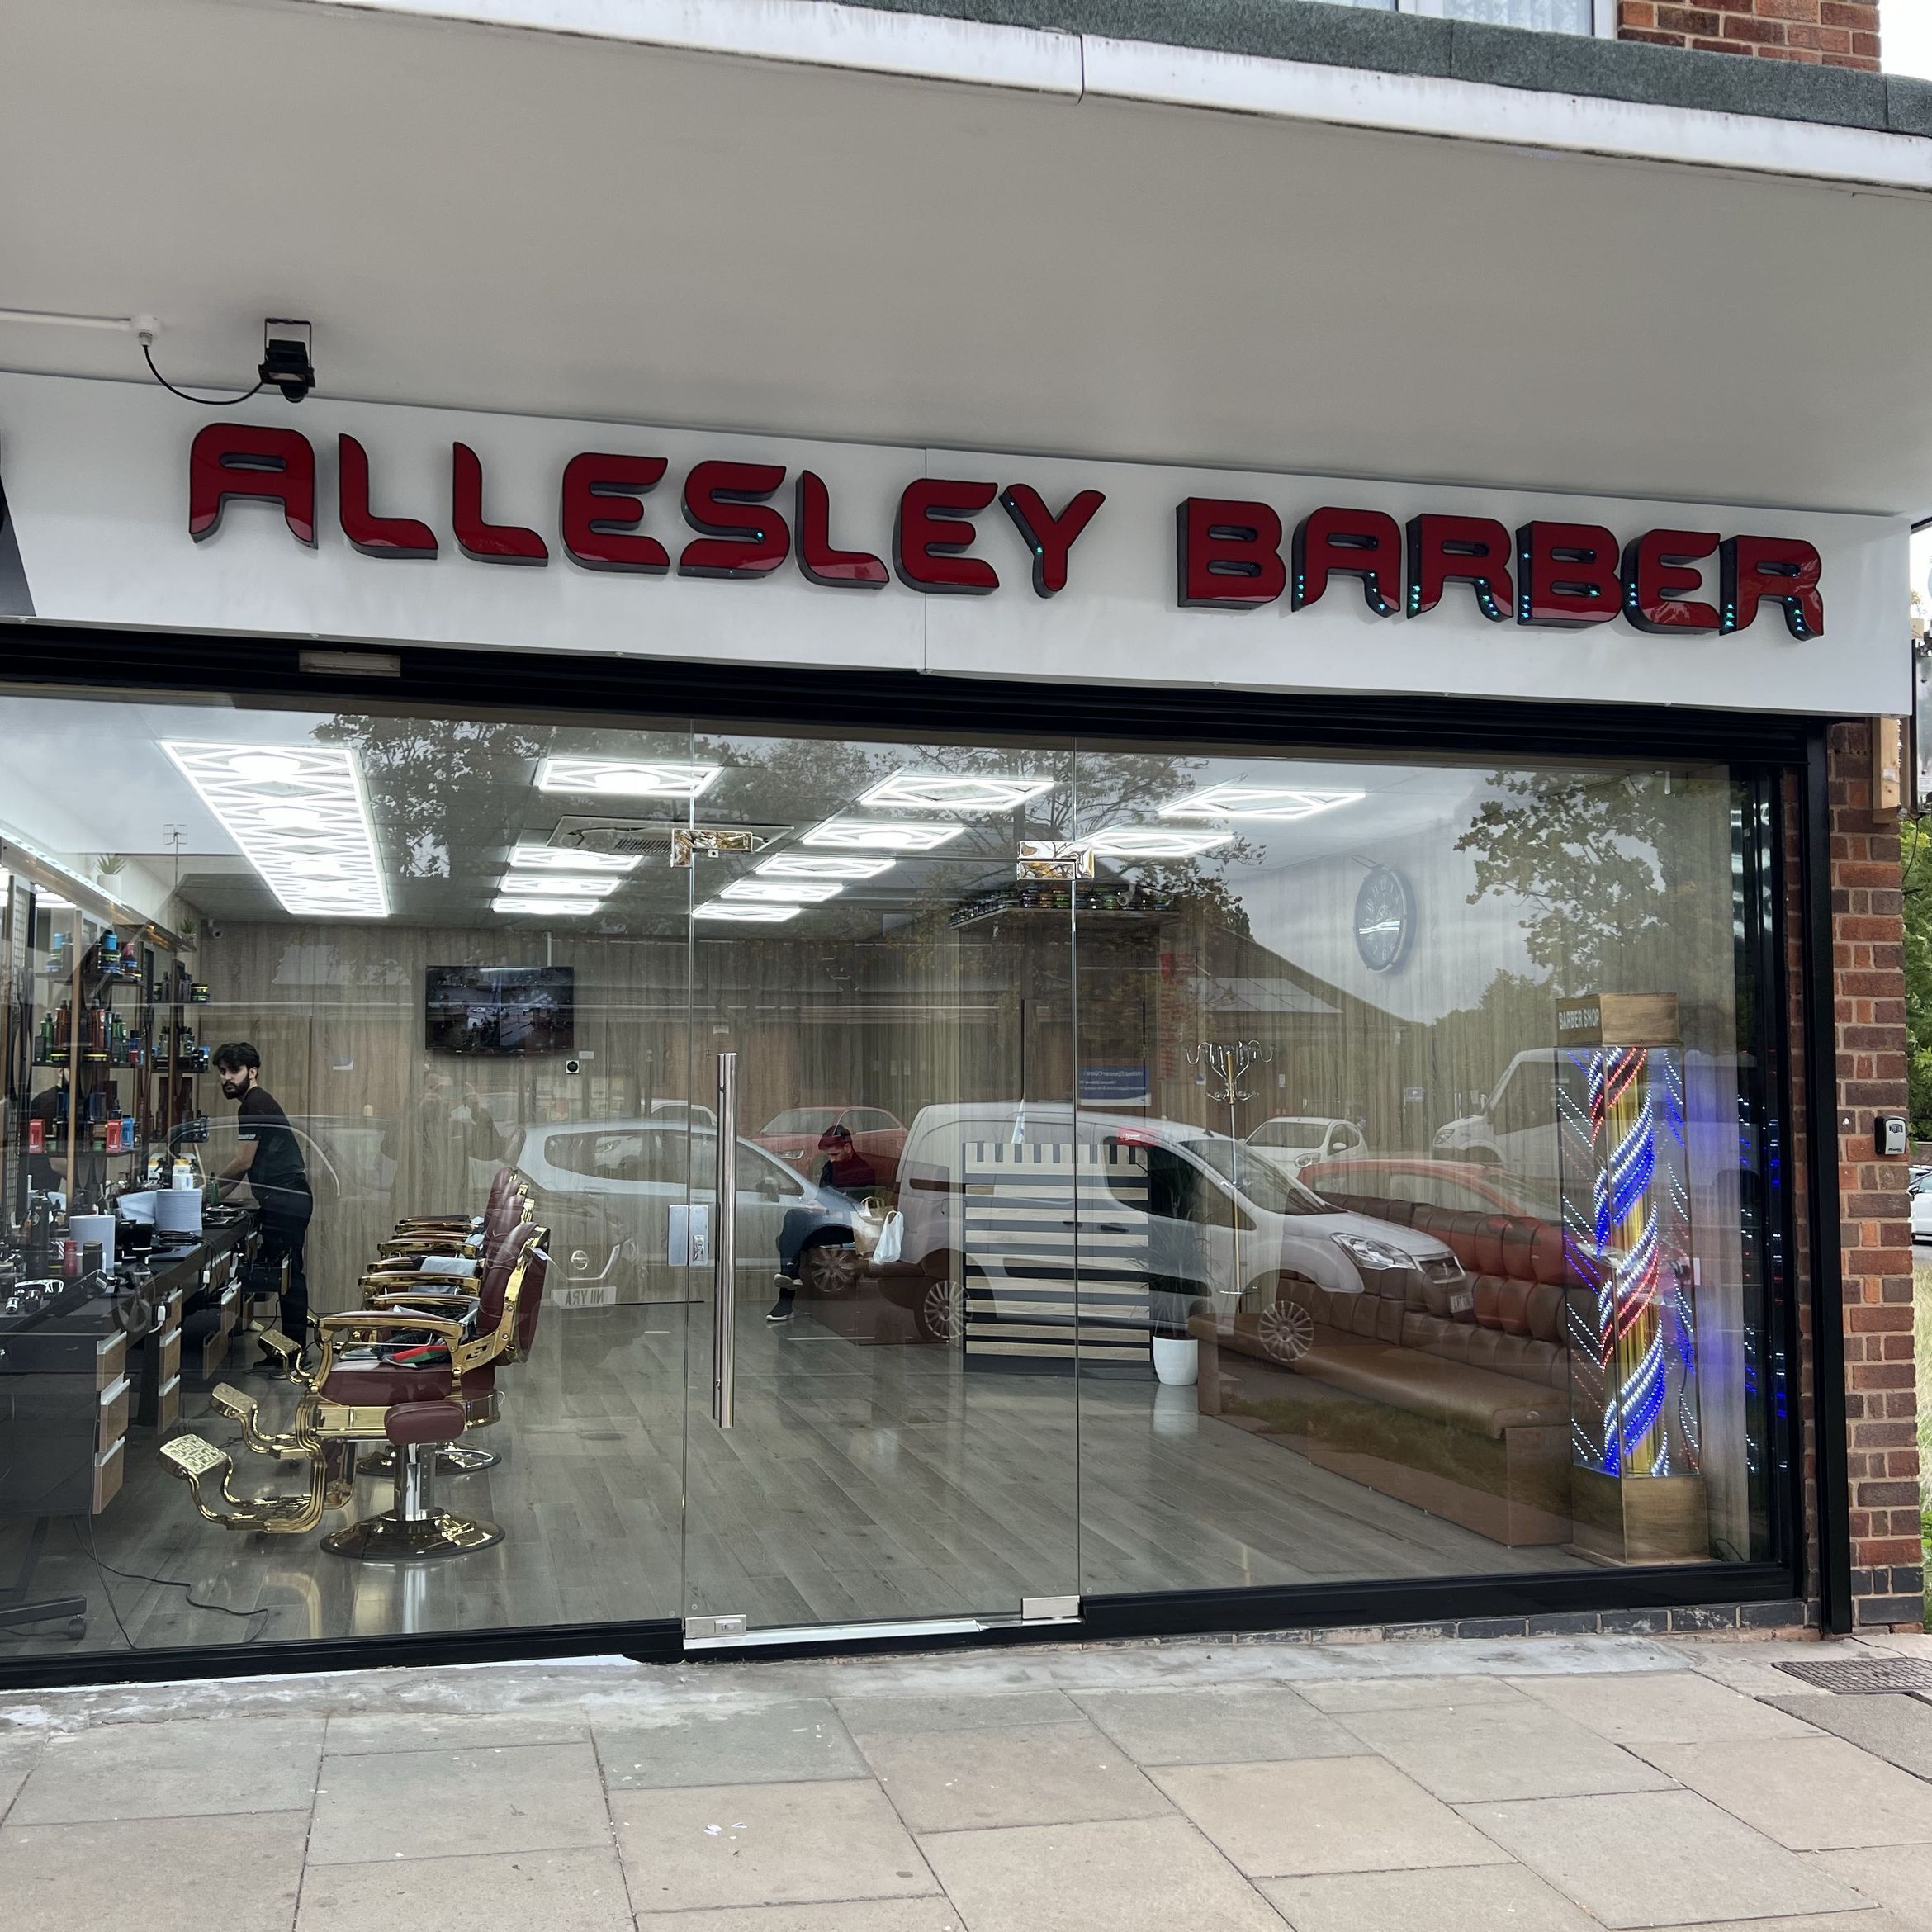 Allesley barber, Whitaker Road, CV5 9JE, Coventry